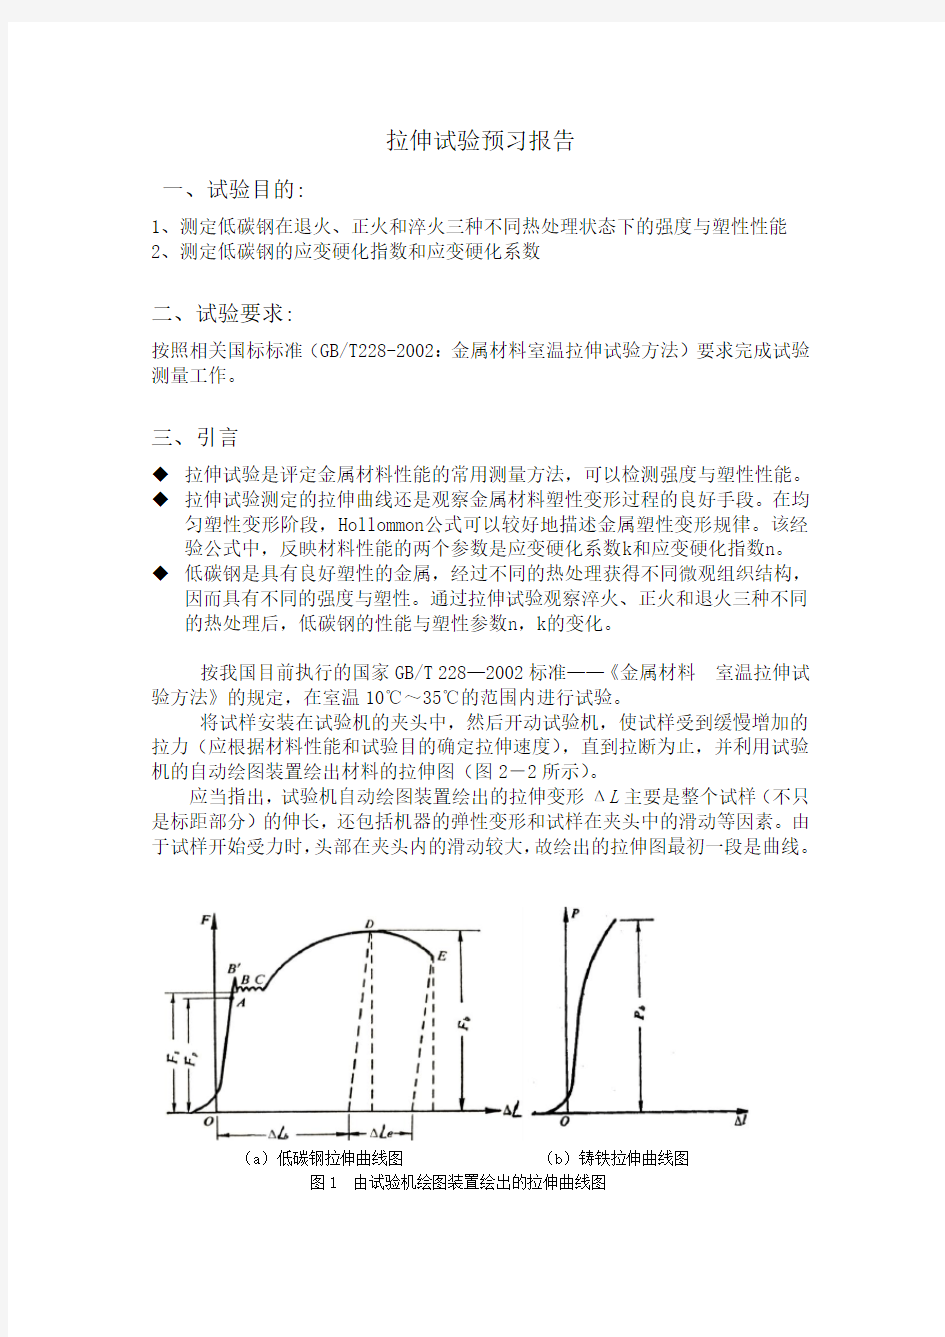 拉伸试验报告 北京科技大学